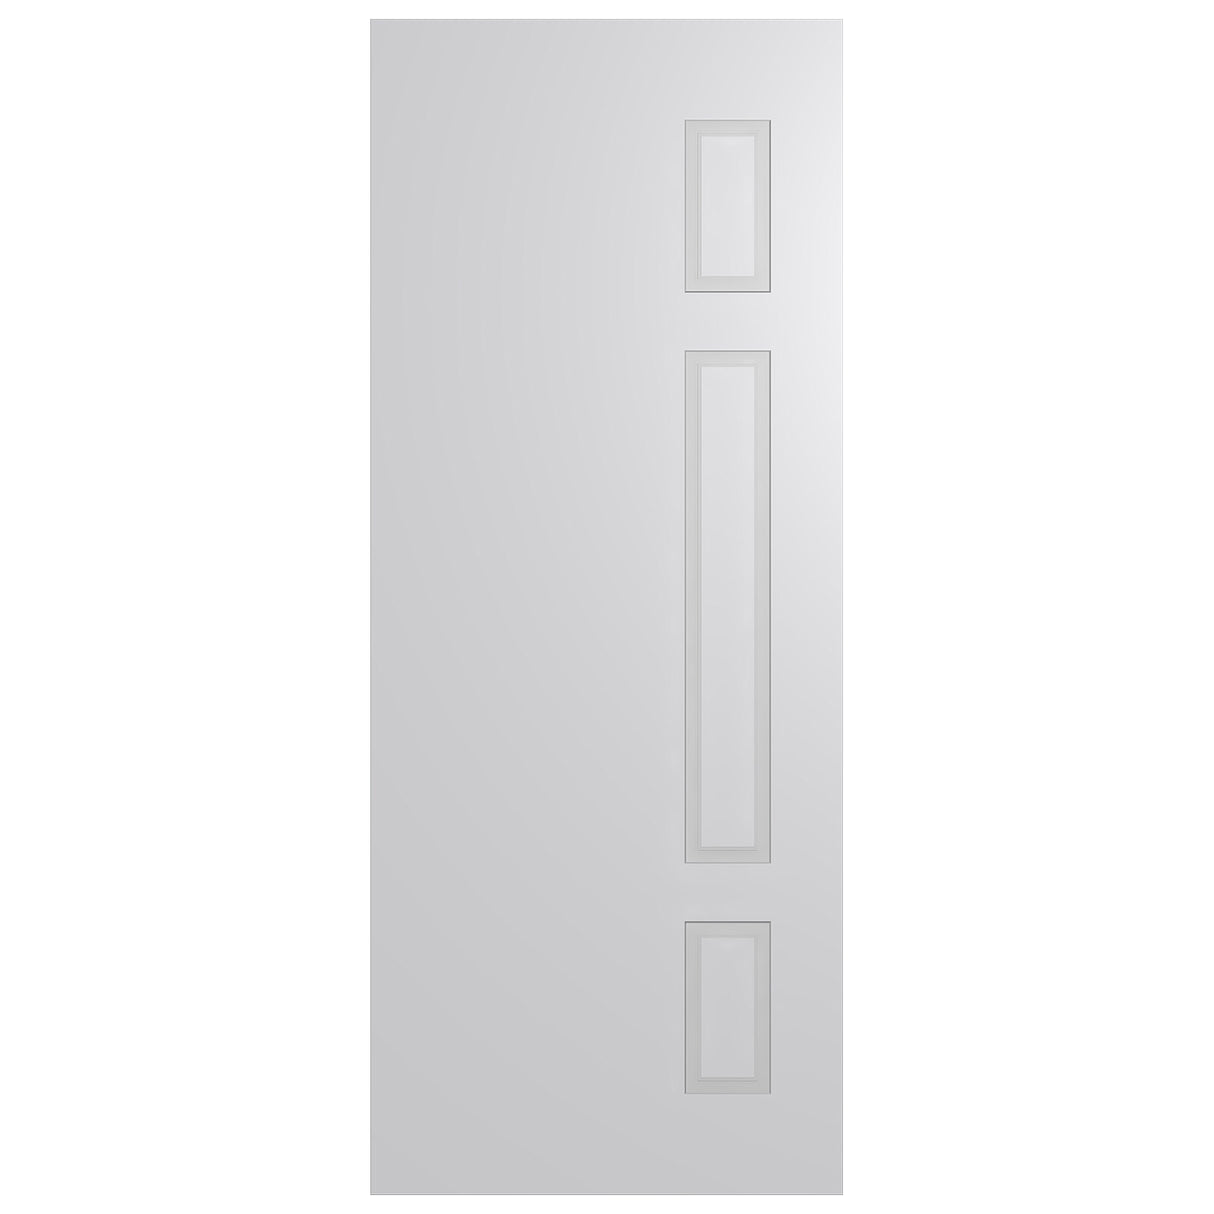 Sorrento 2 Internal door SOR2 -2040 range Installed package